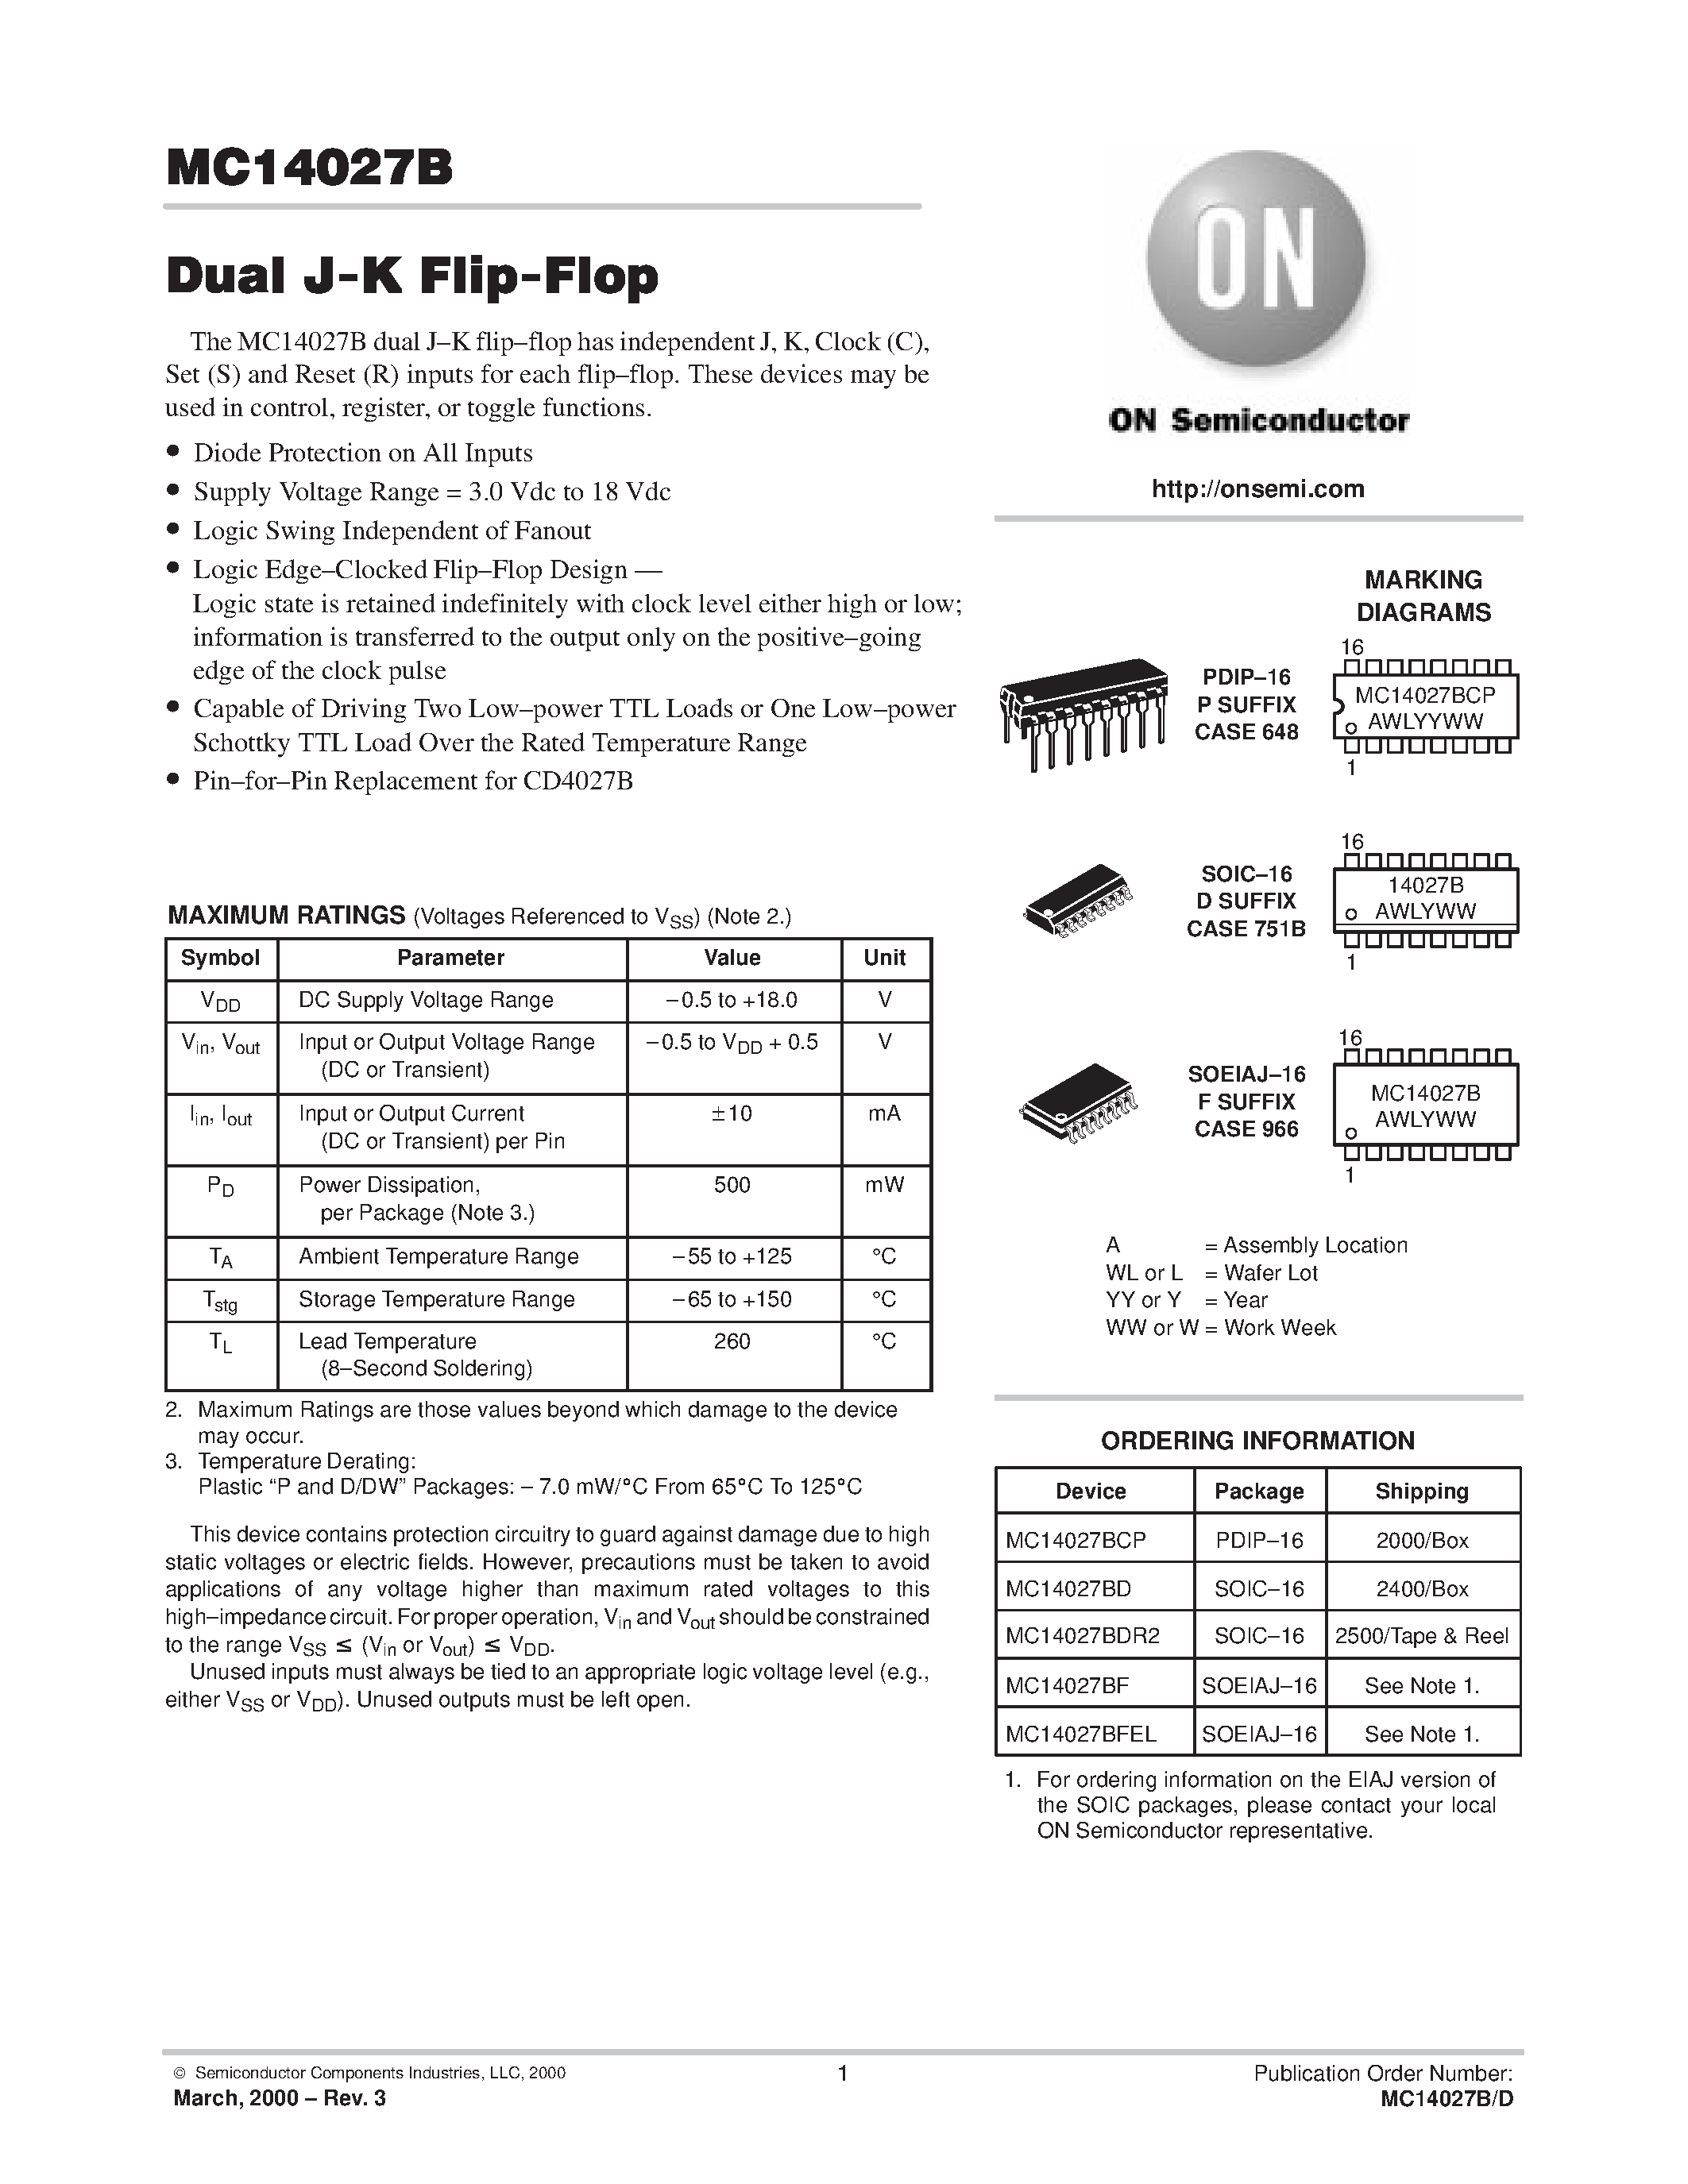 Даташит MC14027BDR2 - Dual J-K Flip-Flop страница 1